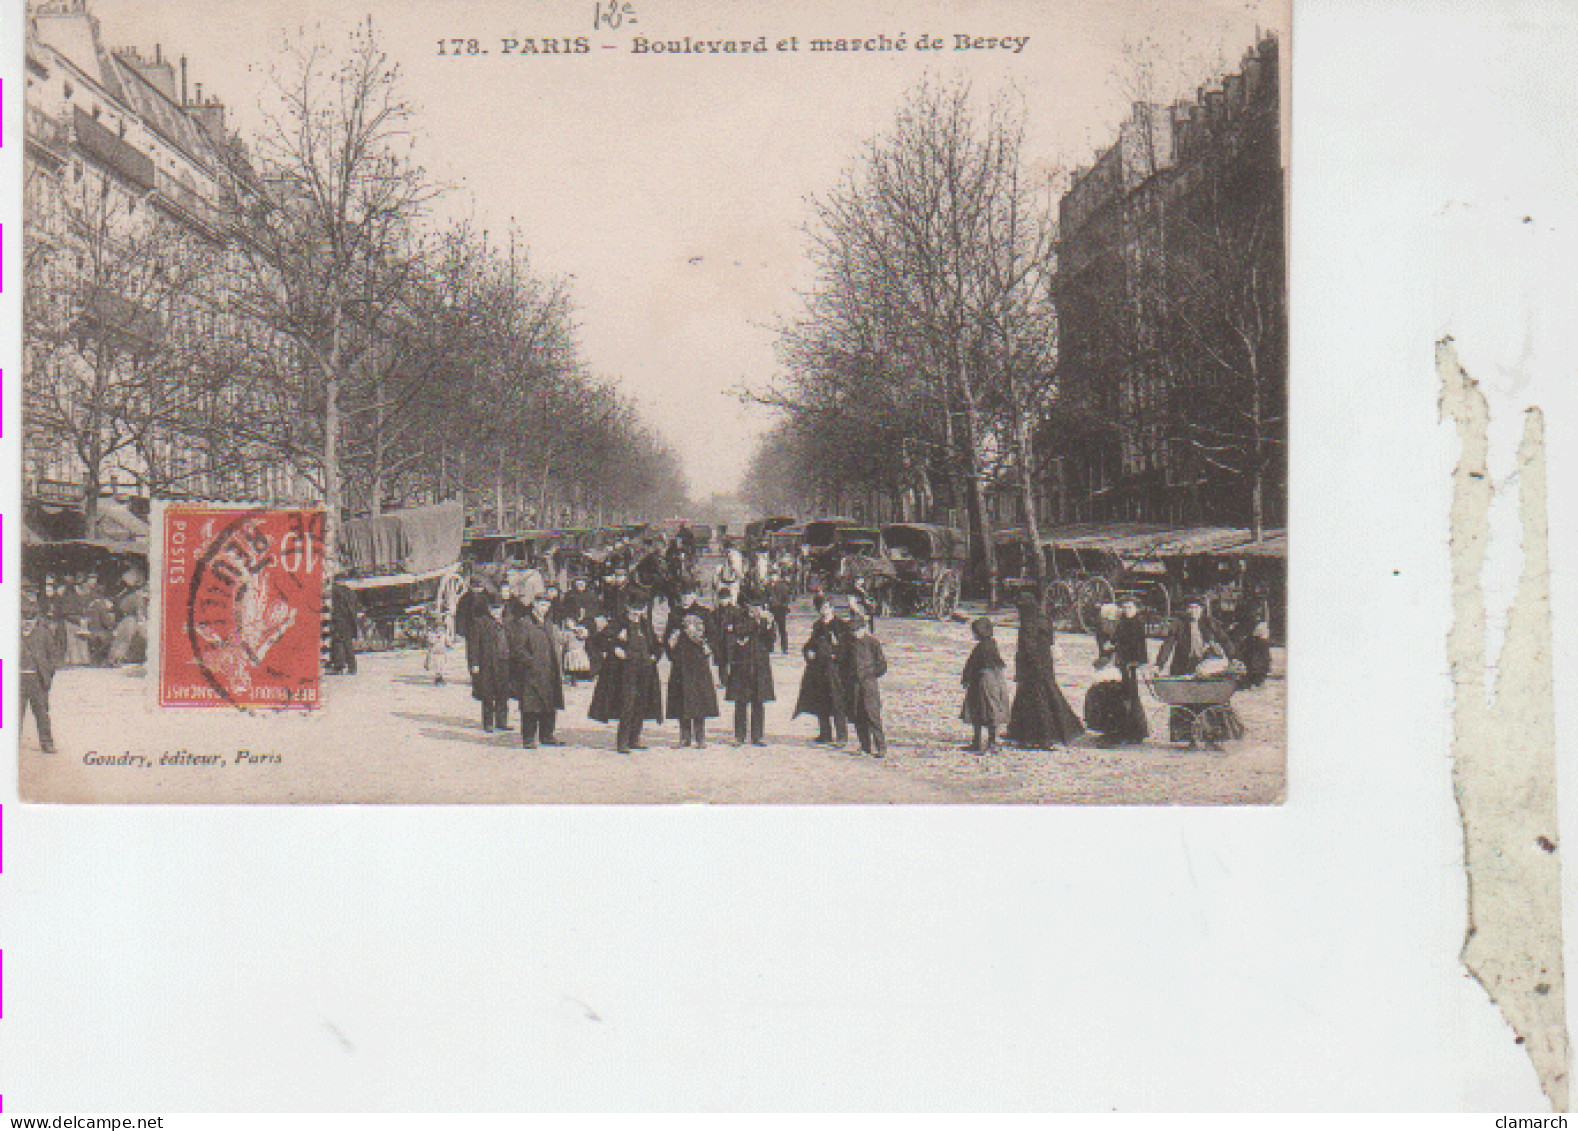 PARIS 12è-Boulevard Et Marché De Bercy - 178 - Distretto: 12